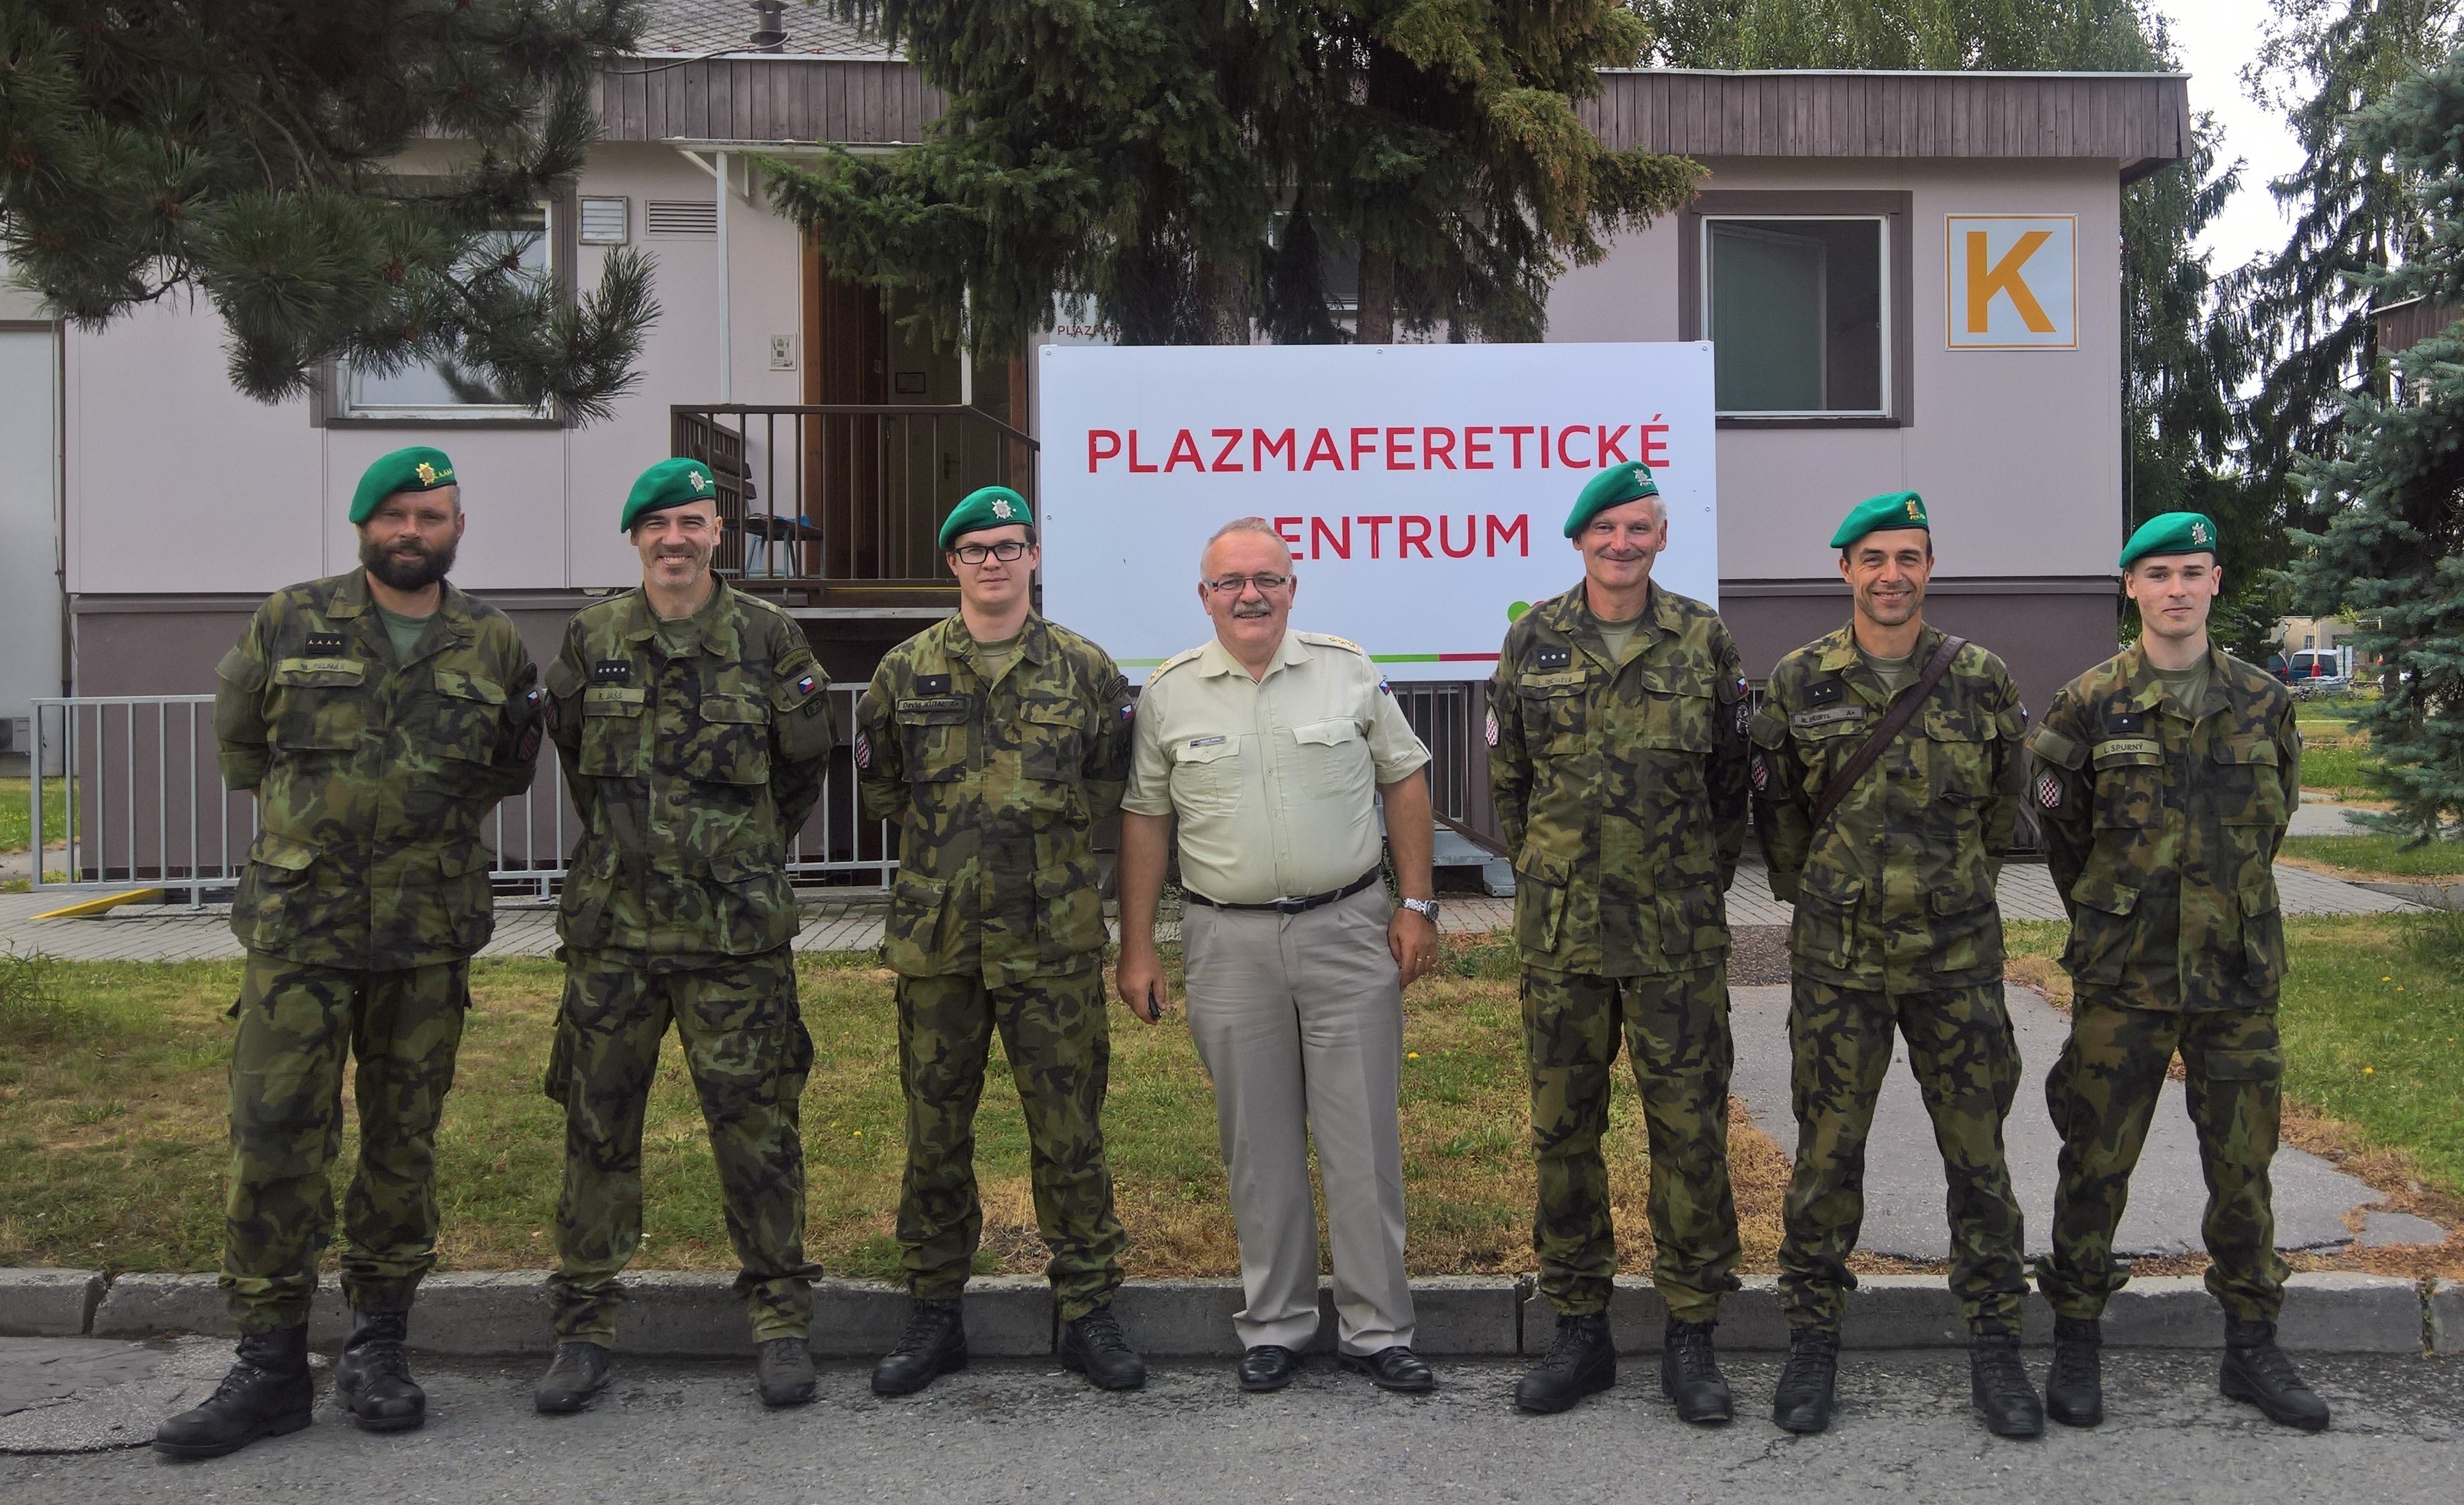 Plazmaferetické centrum šumperské nemocnice obsadilo celkem sedm členů roty. zdroj foto: Archiv NŠ